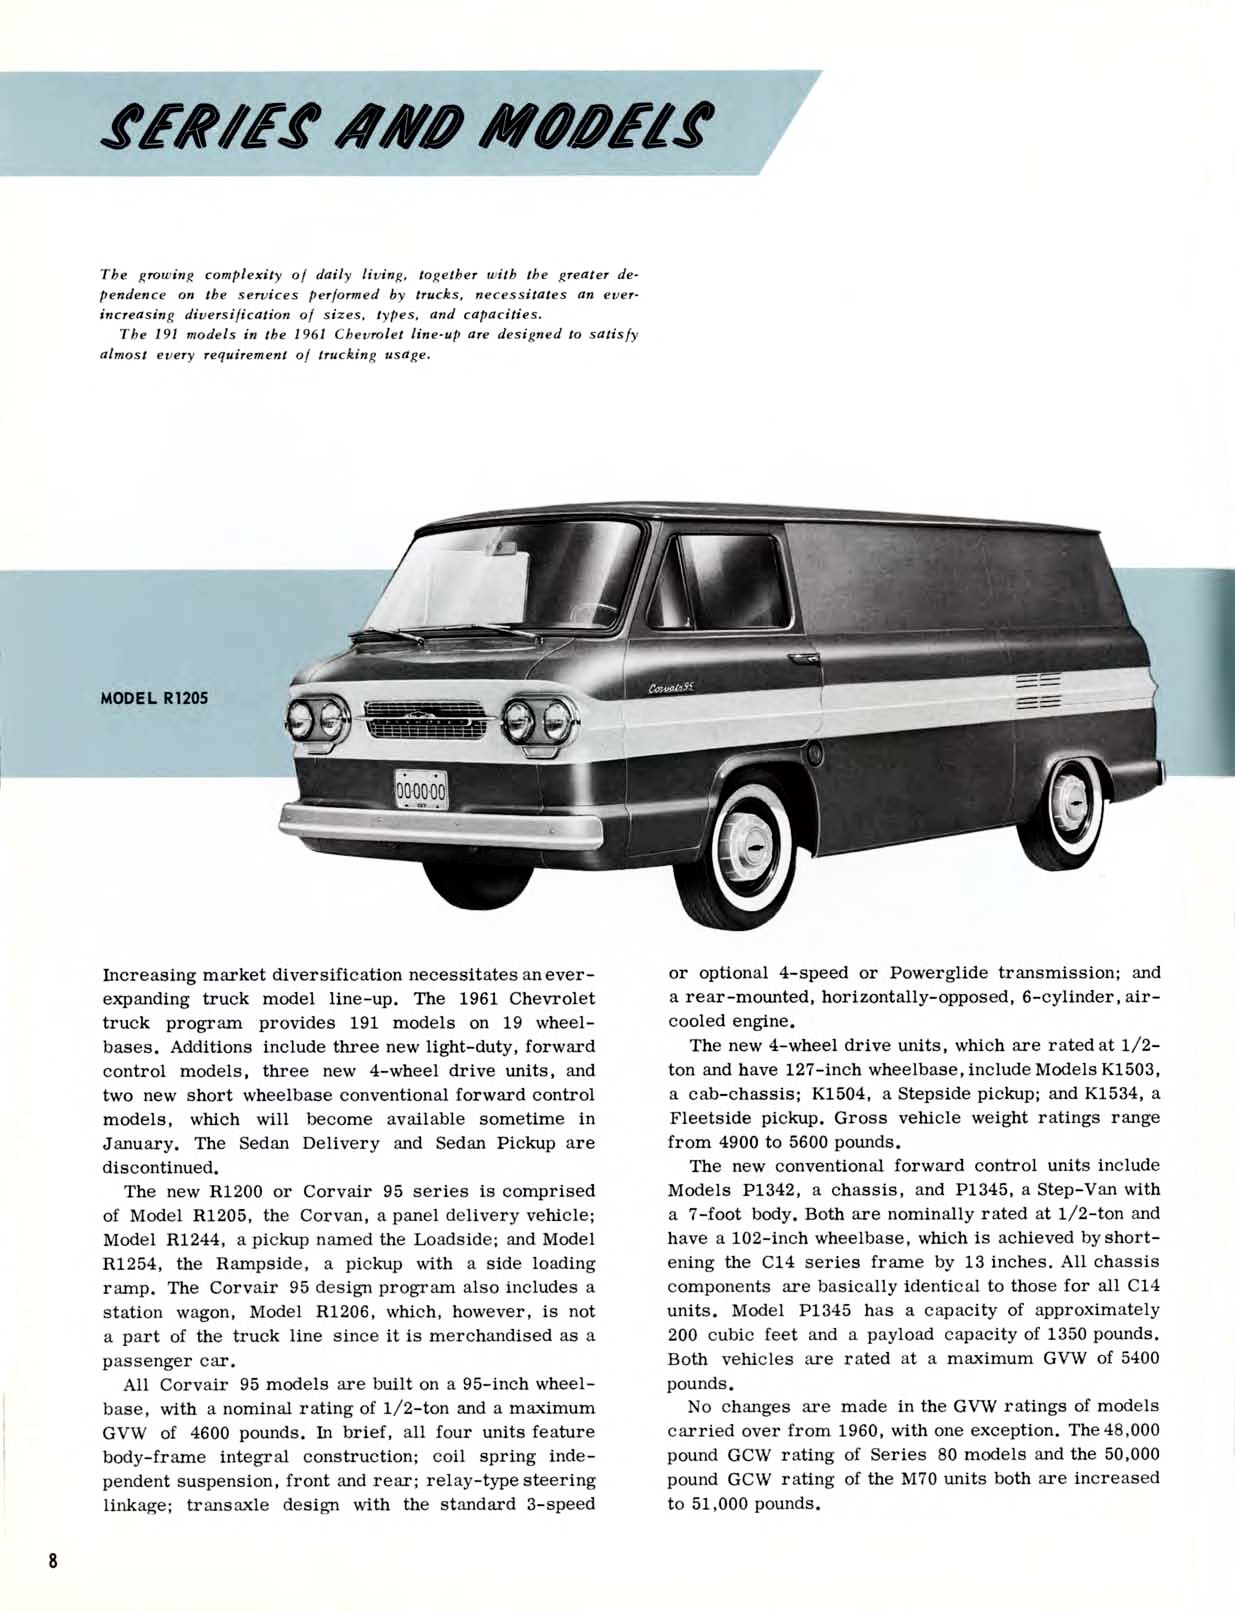 1961 Chevrolet Truck Engineering Features-08